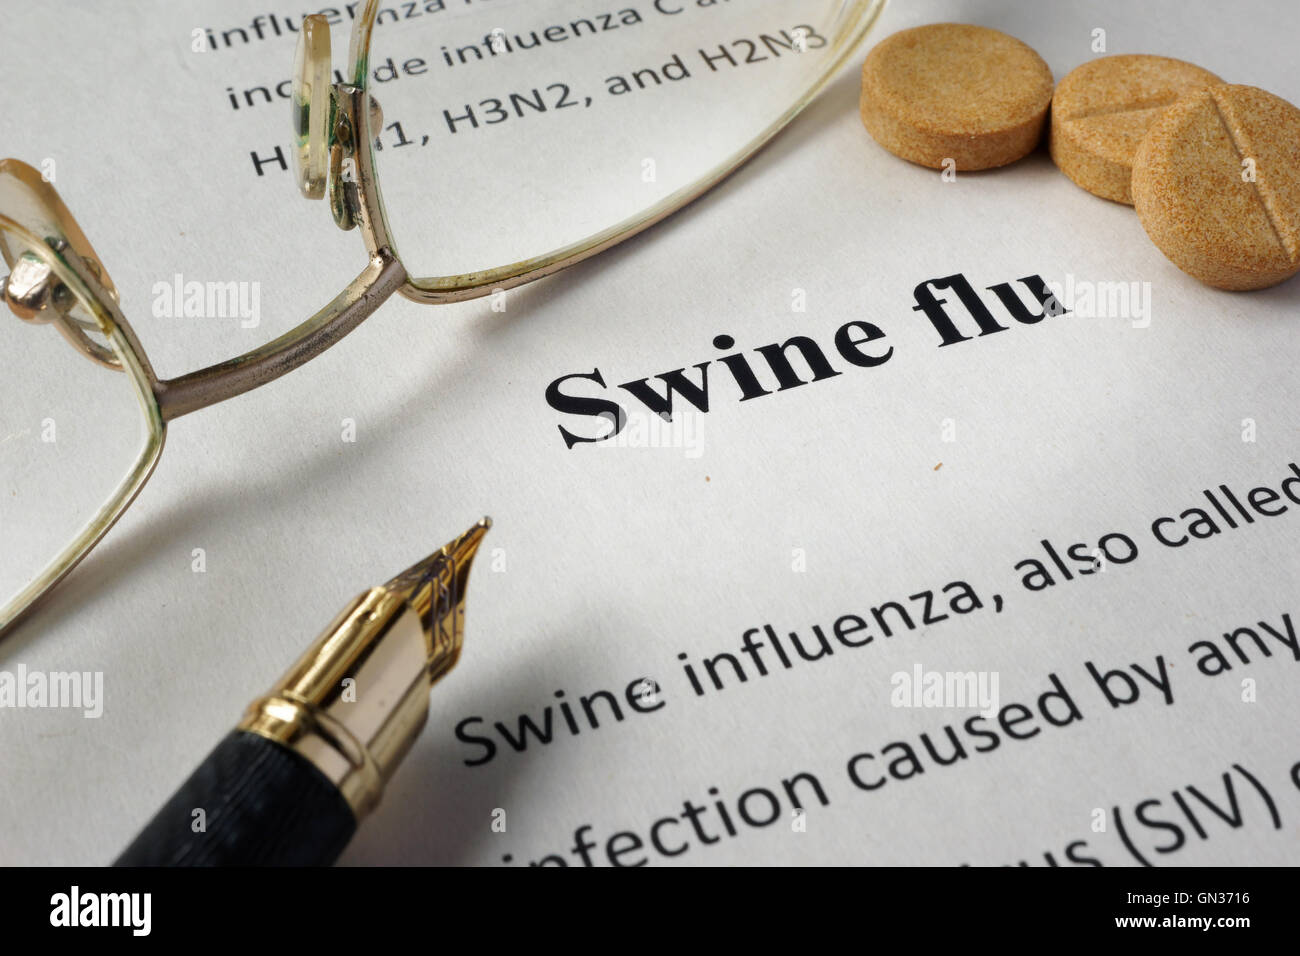 La page de formulaire de l'hôpital avec le diagnostic de la grippe porcine et des verres. Banque D'Images